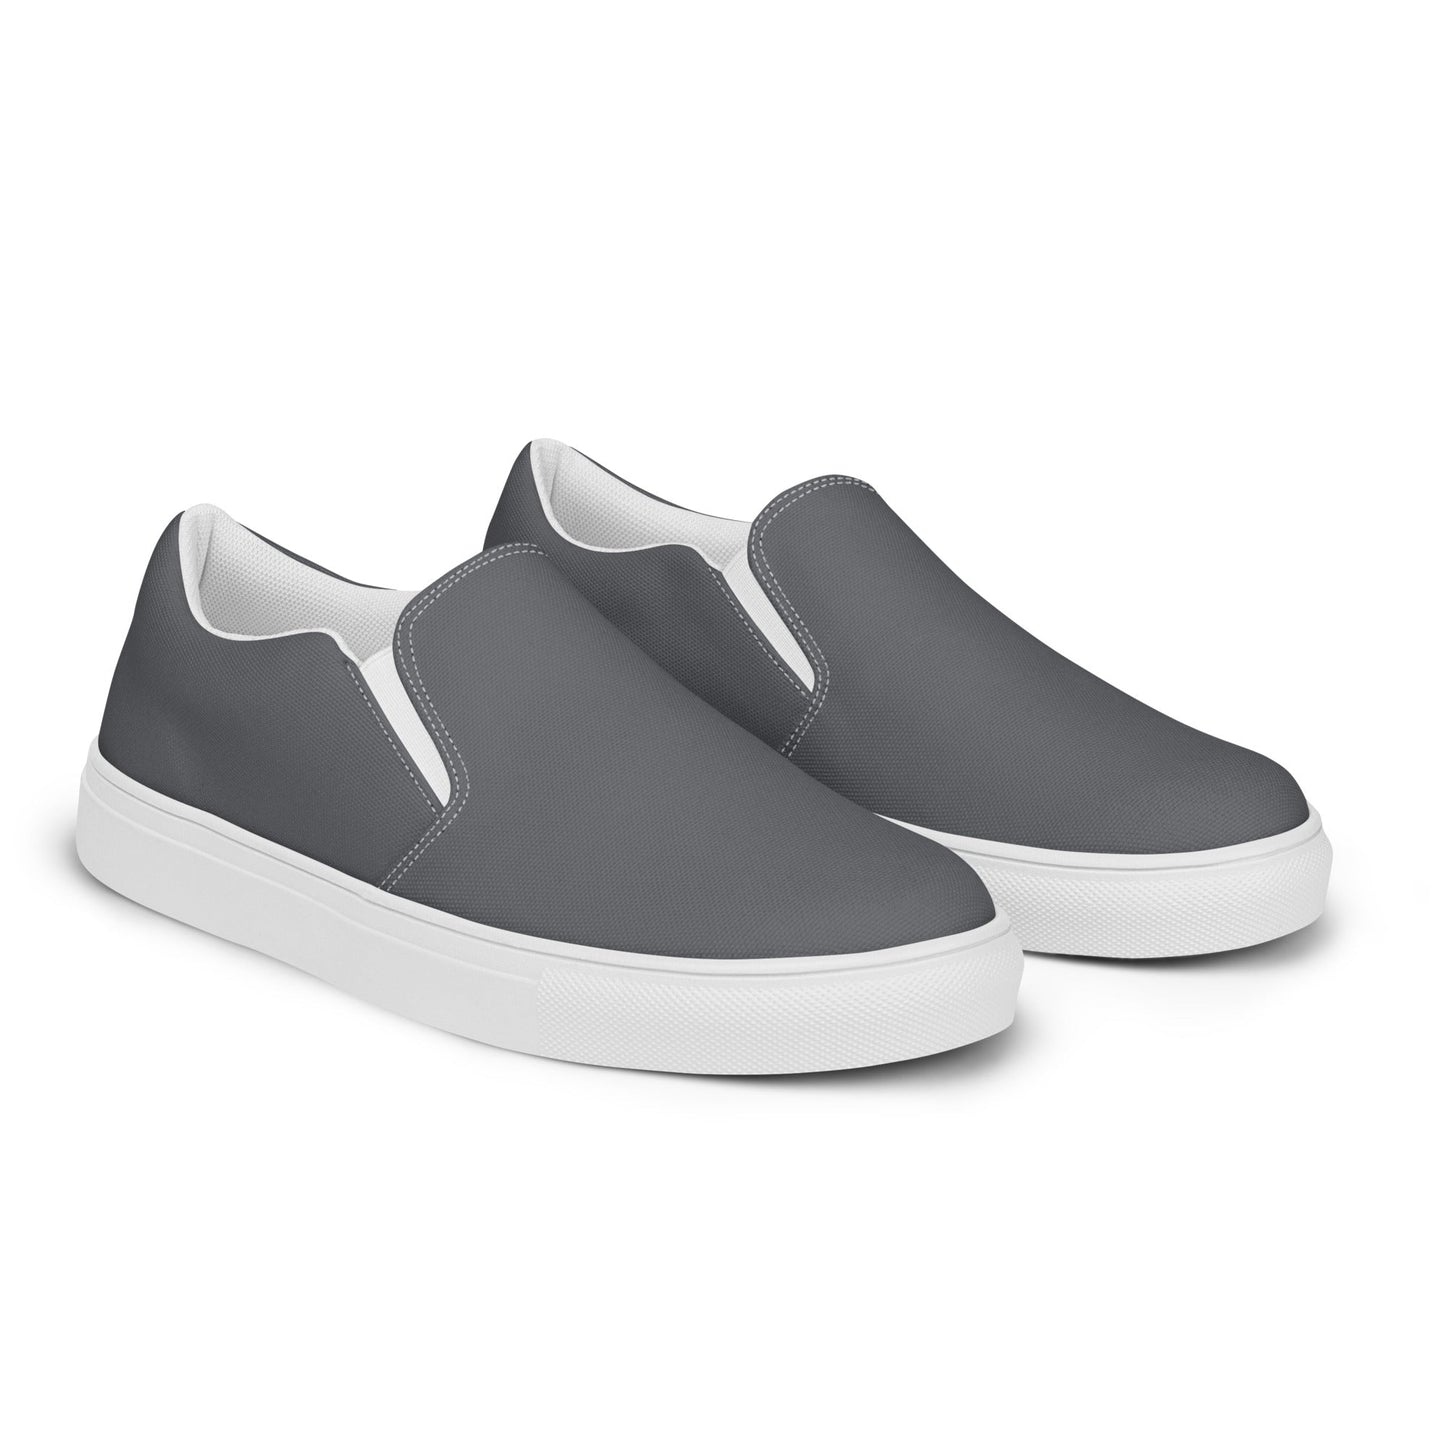 klasneakers Men’s slip-on canvas shoes - Concrete Blue